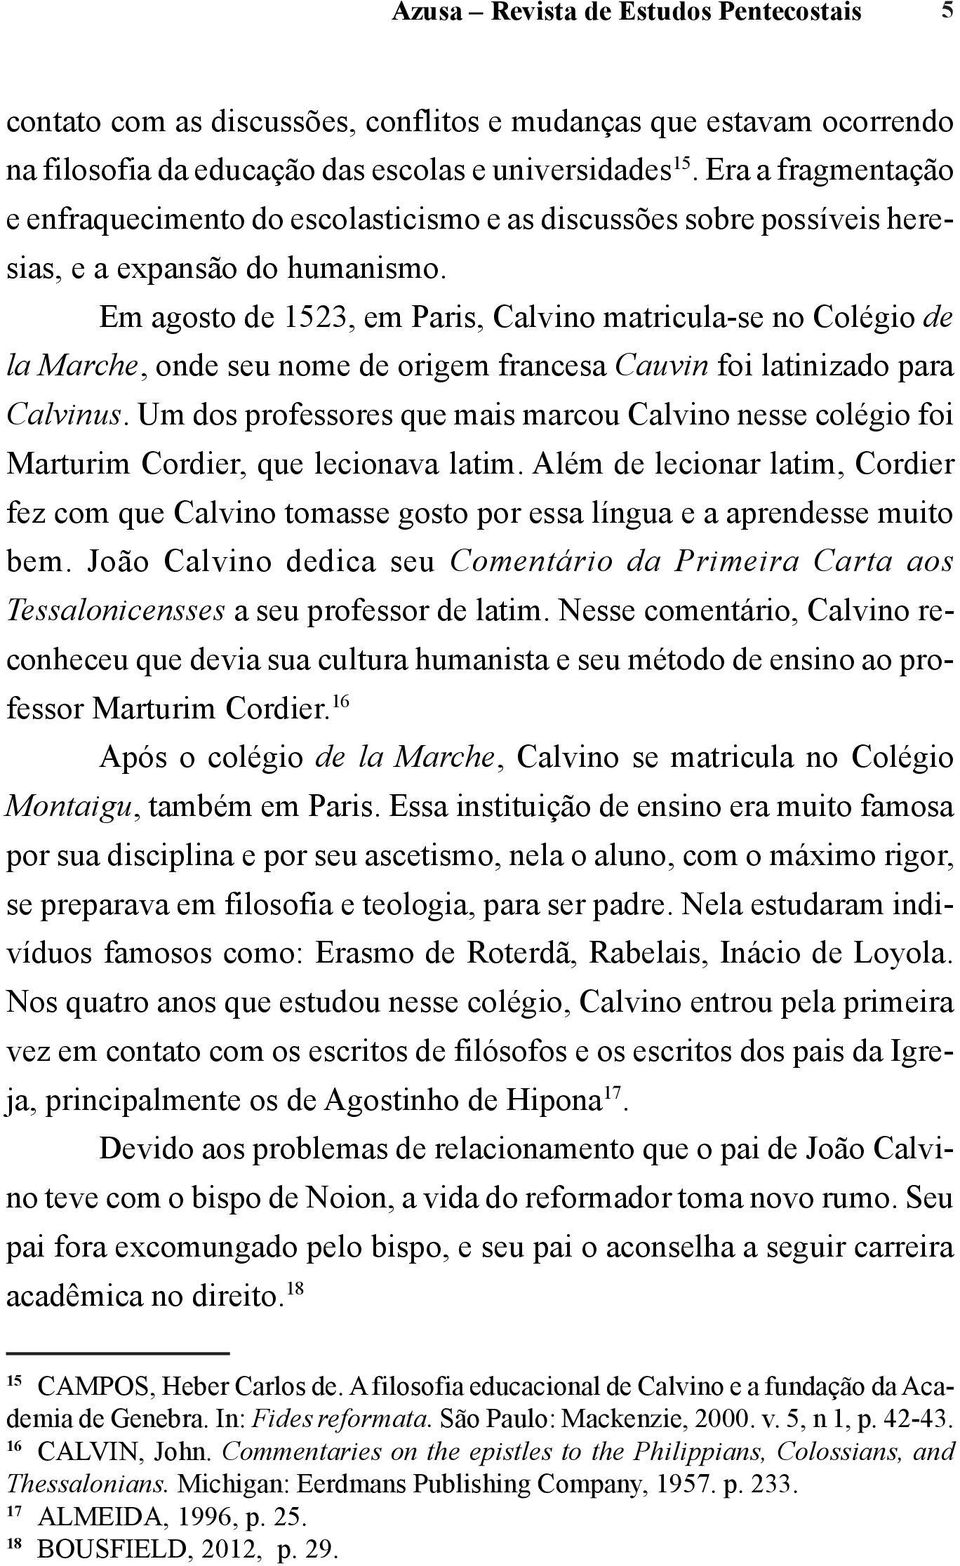 Em agosto de 1523, em Paris, Calvino matricula-se no Colégio de la Marche, onde seu nome de origem francesa Cauvin foi latinizado para Calvinus.